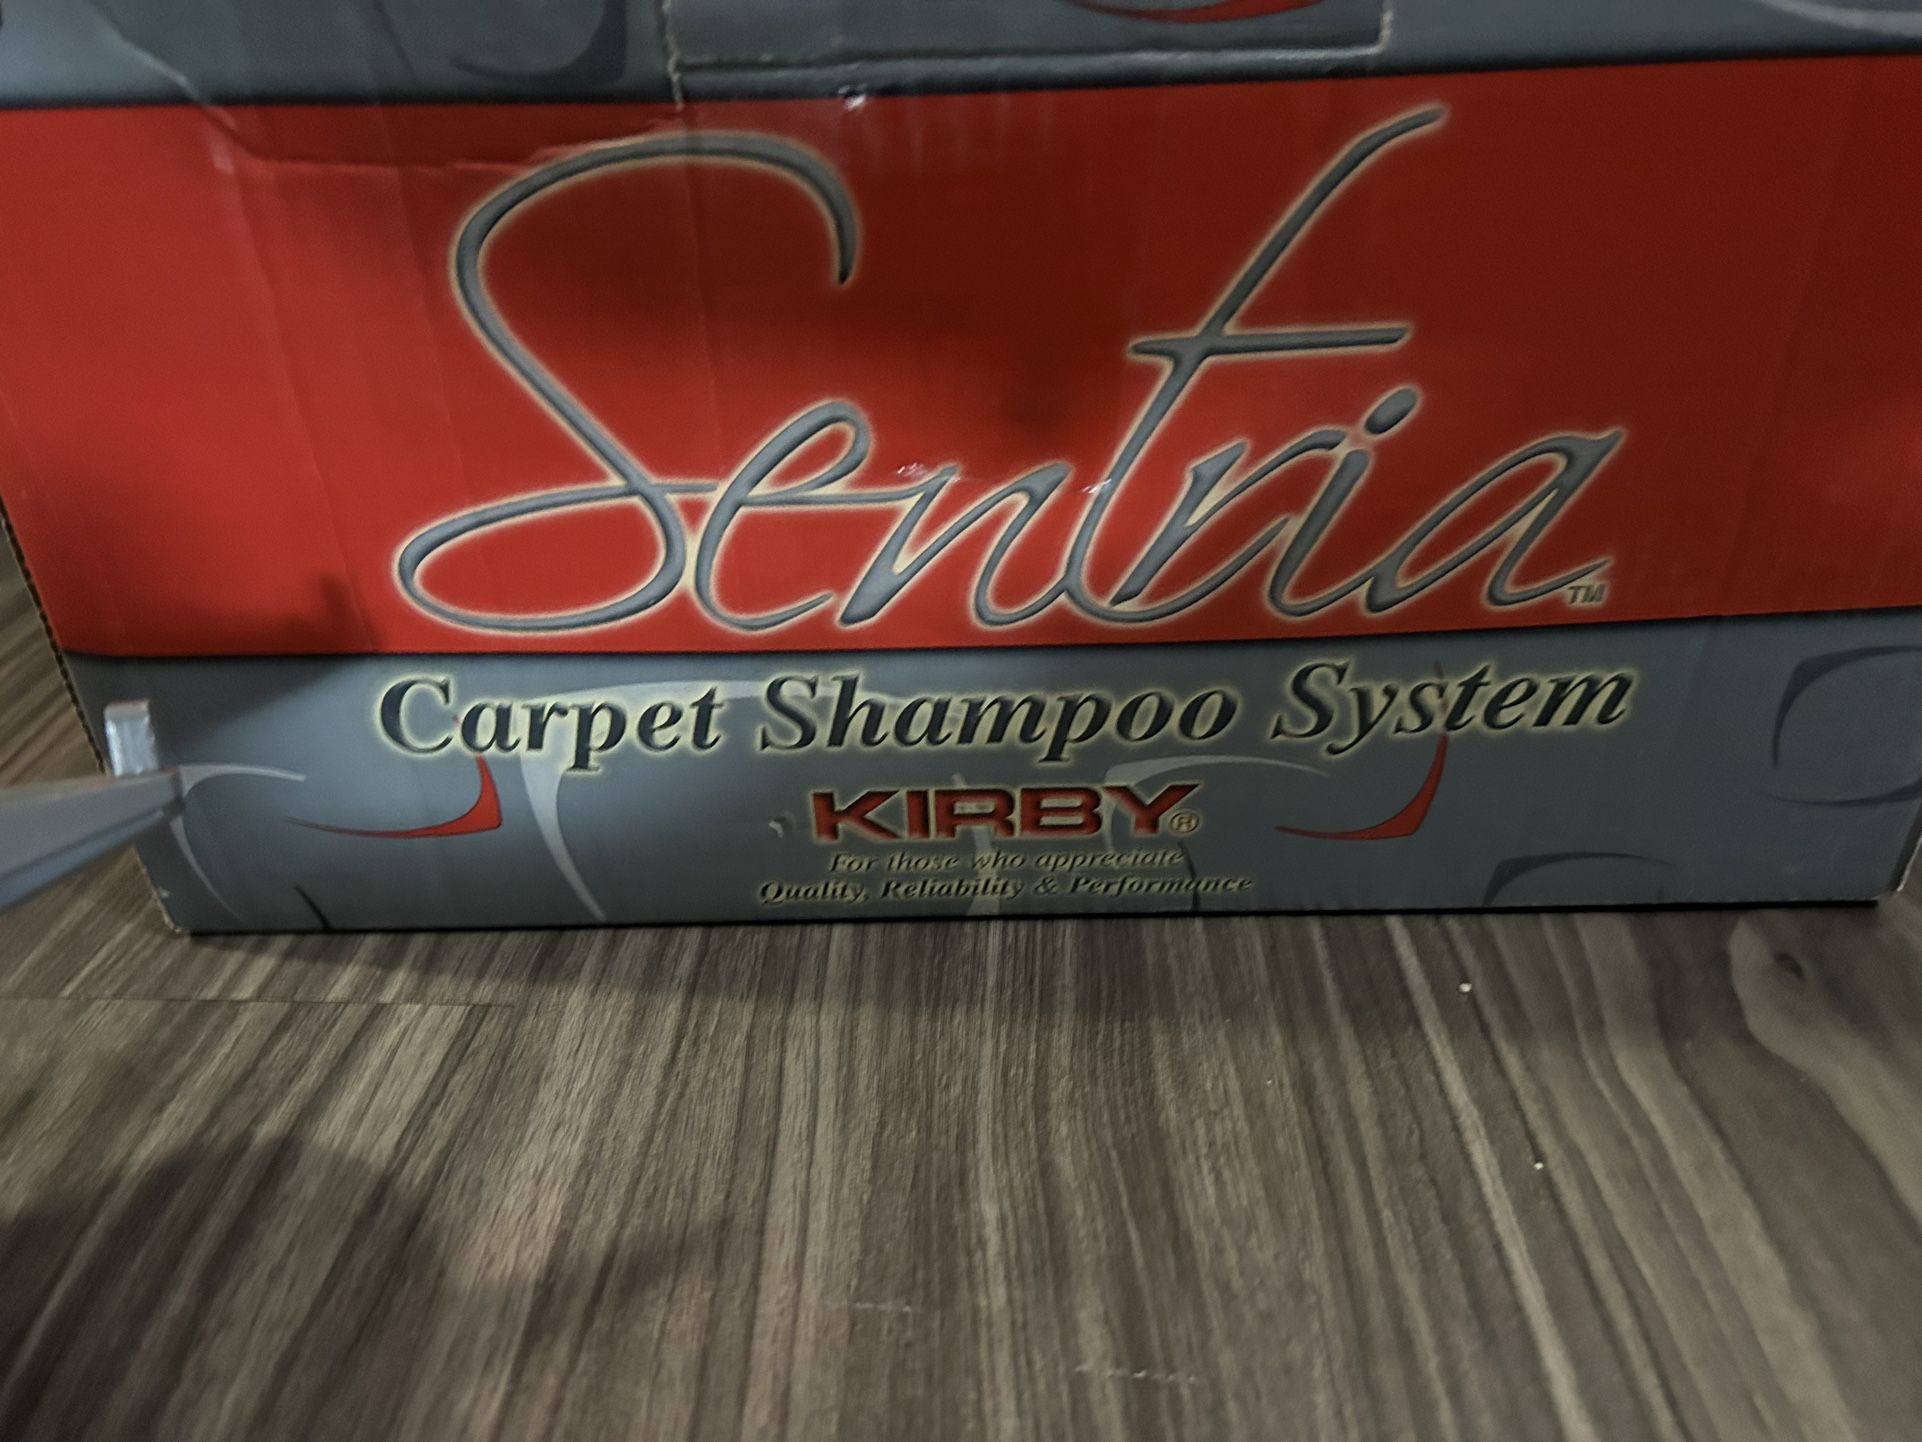 Carpet Shampoo System Sentria